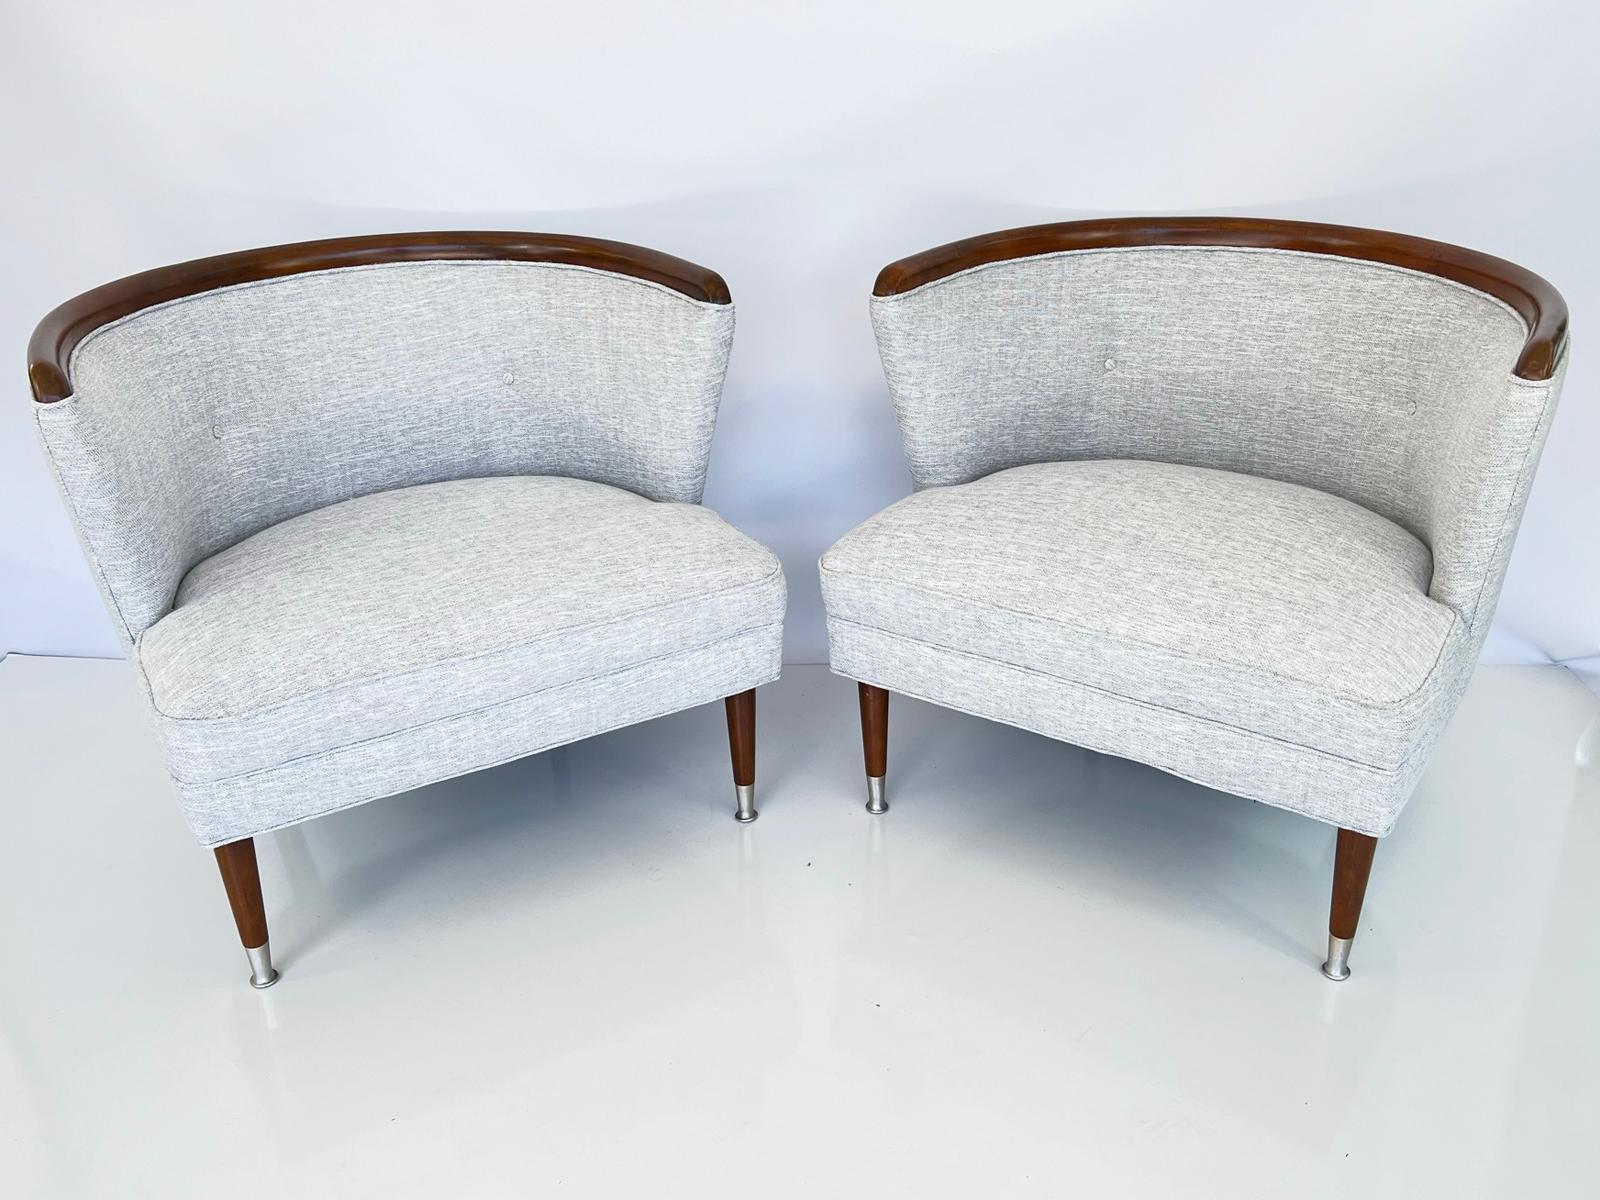 Zwei mit blauem/grauem Leinen gepolsterte Bergersessel im Stil der Jahrhundertmitte. Jeder wannenförmige Stuhl hat eine geschwungene Nussbaumkrone, die die gepolsterte und getuftete Rückenlehne überragt. Ein lockeres Drop-in-Kissen sitzt auf einer